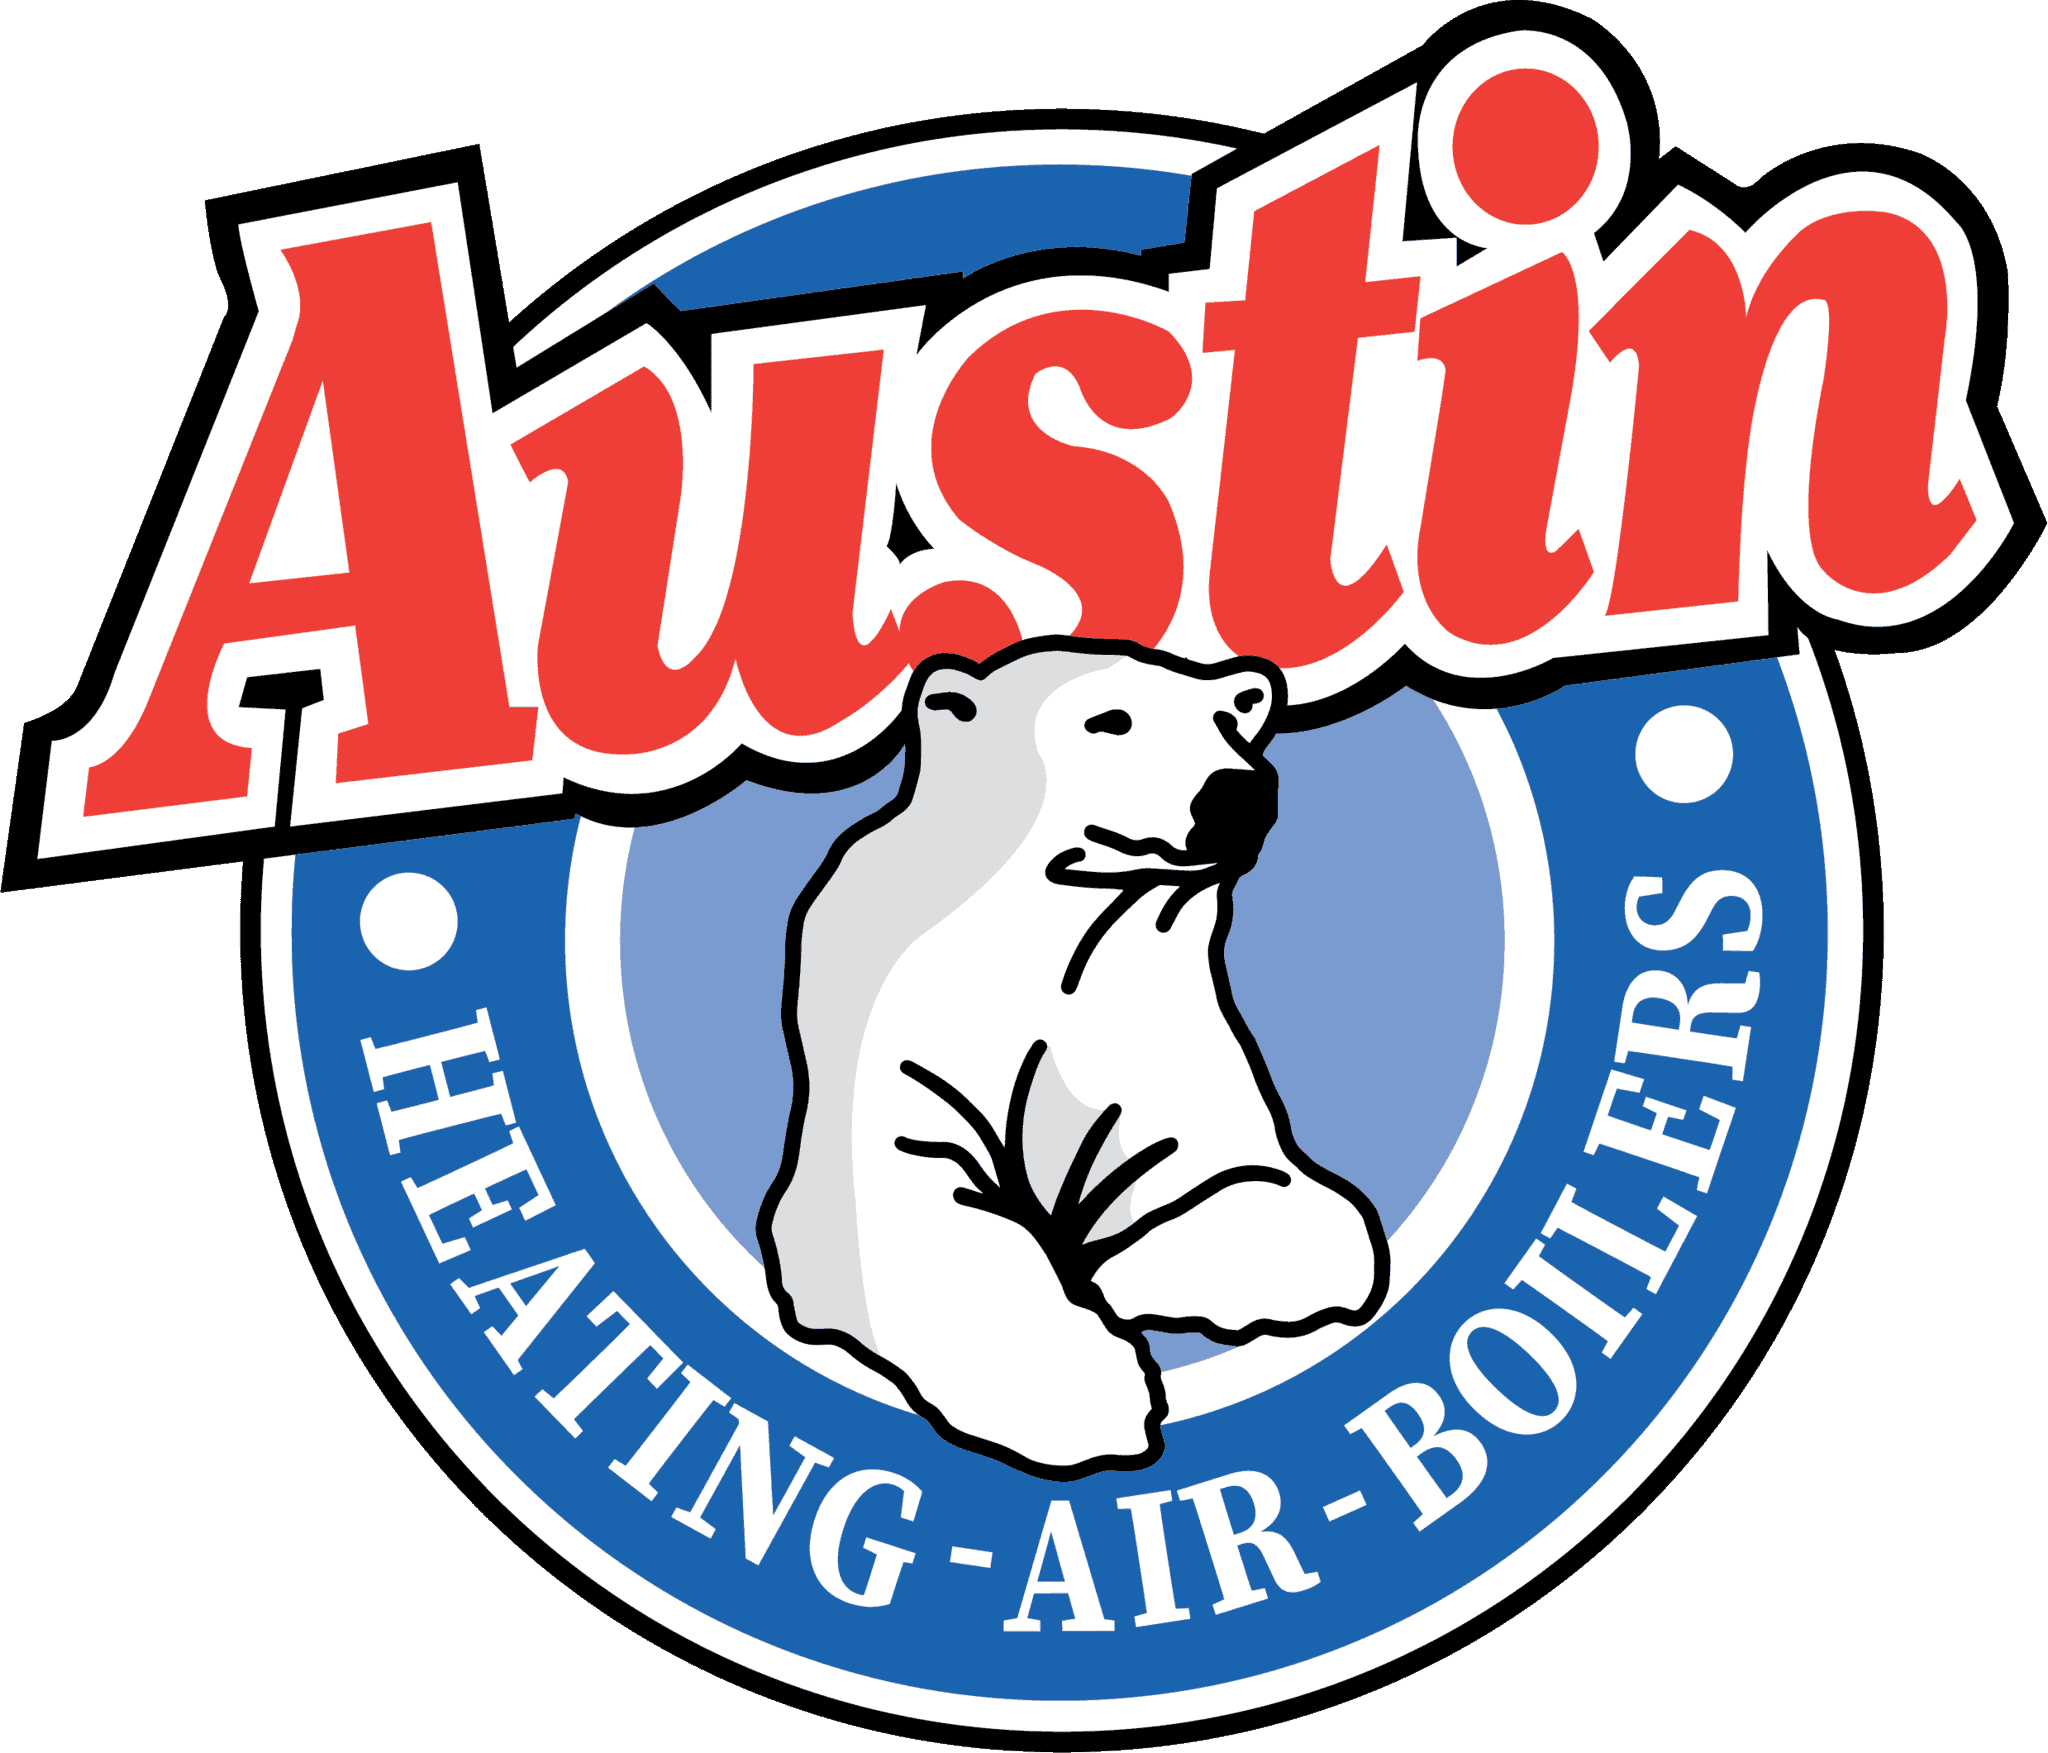 Austin Plumbing Logo